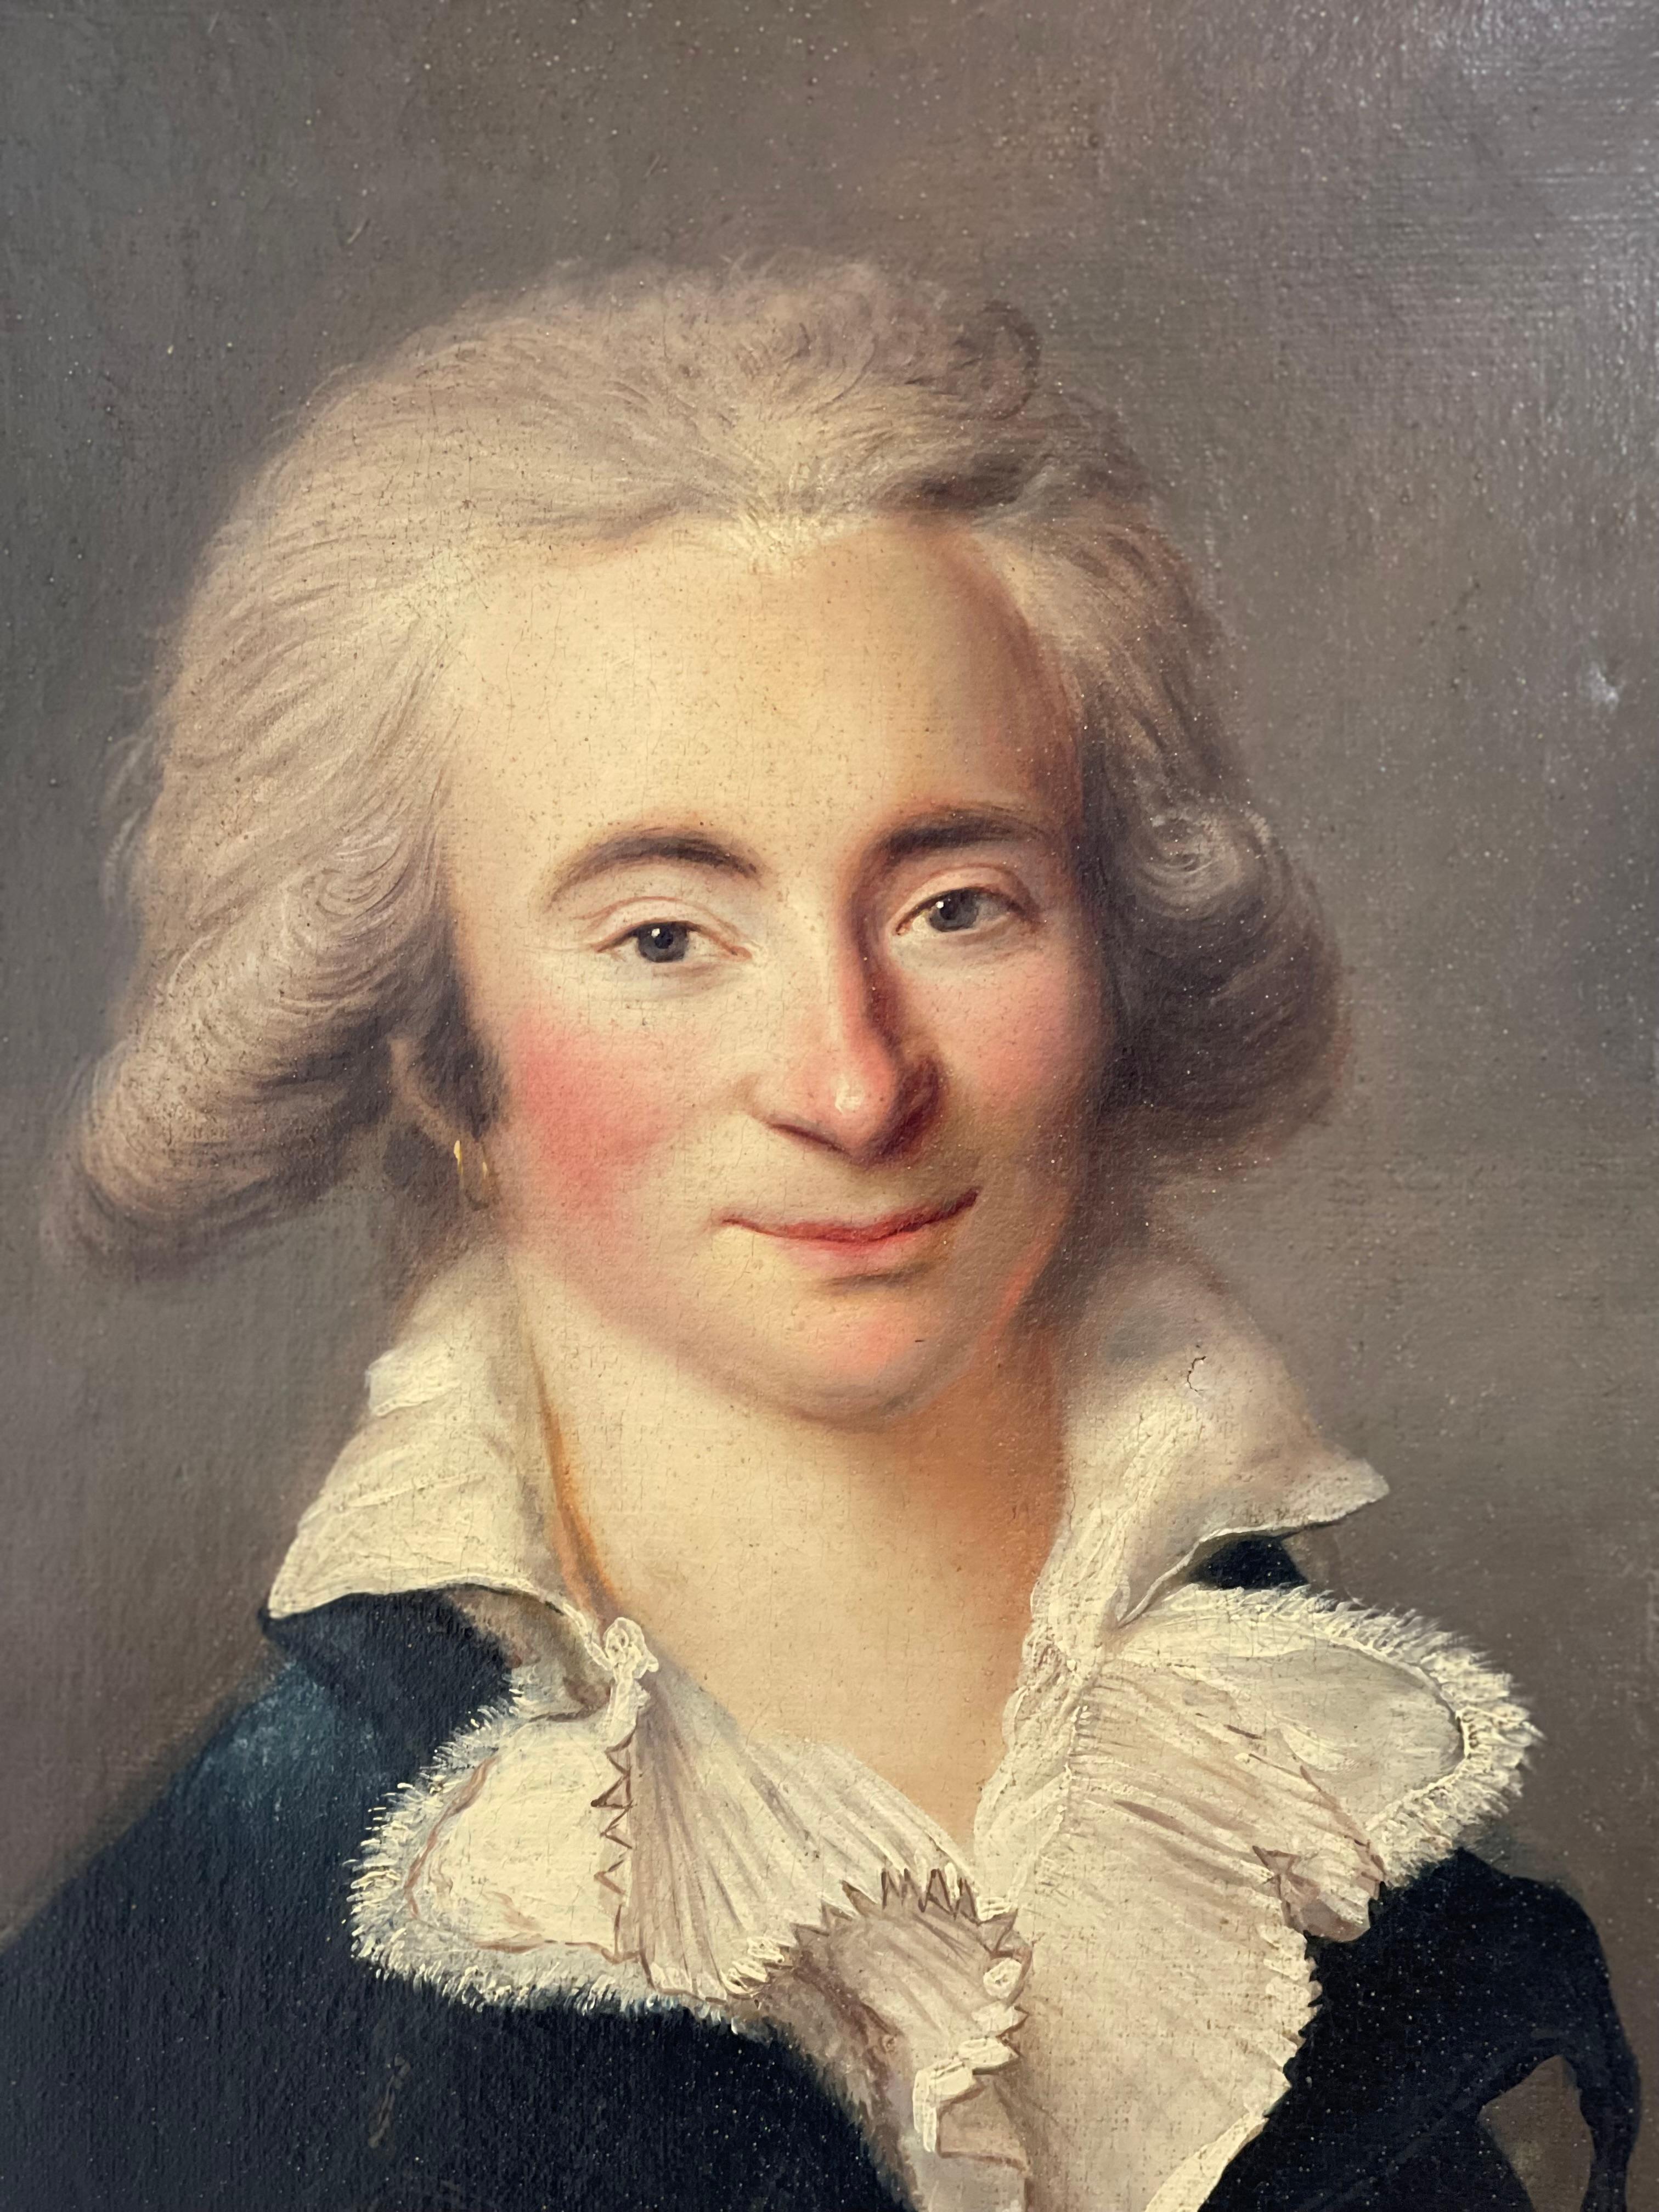 huile sur toile d'un portrait ovale d'un aristocrate du 18ème siècle

L'individu au regard malicieux porte une coiffure très volumineuse en amidon poudré.
Une boucle d'oreille à l'oreille est un exemple rare de coquetterie dans une image.
Son